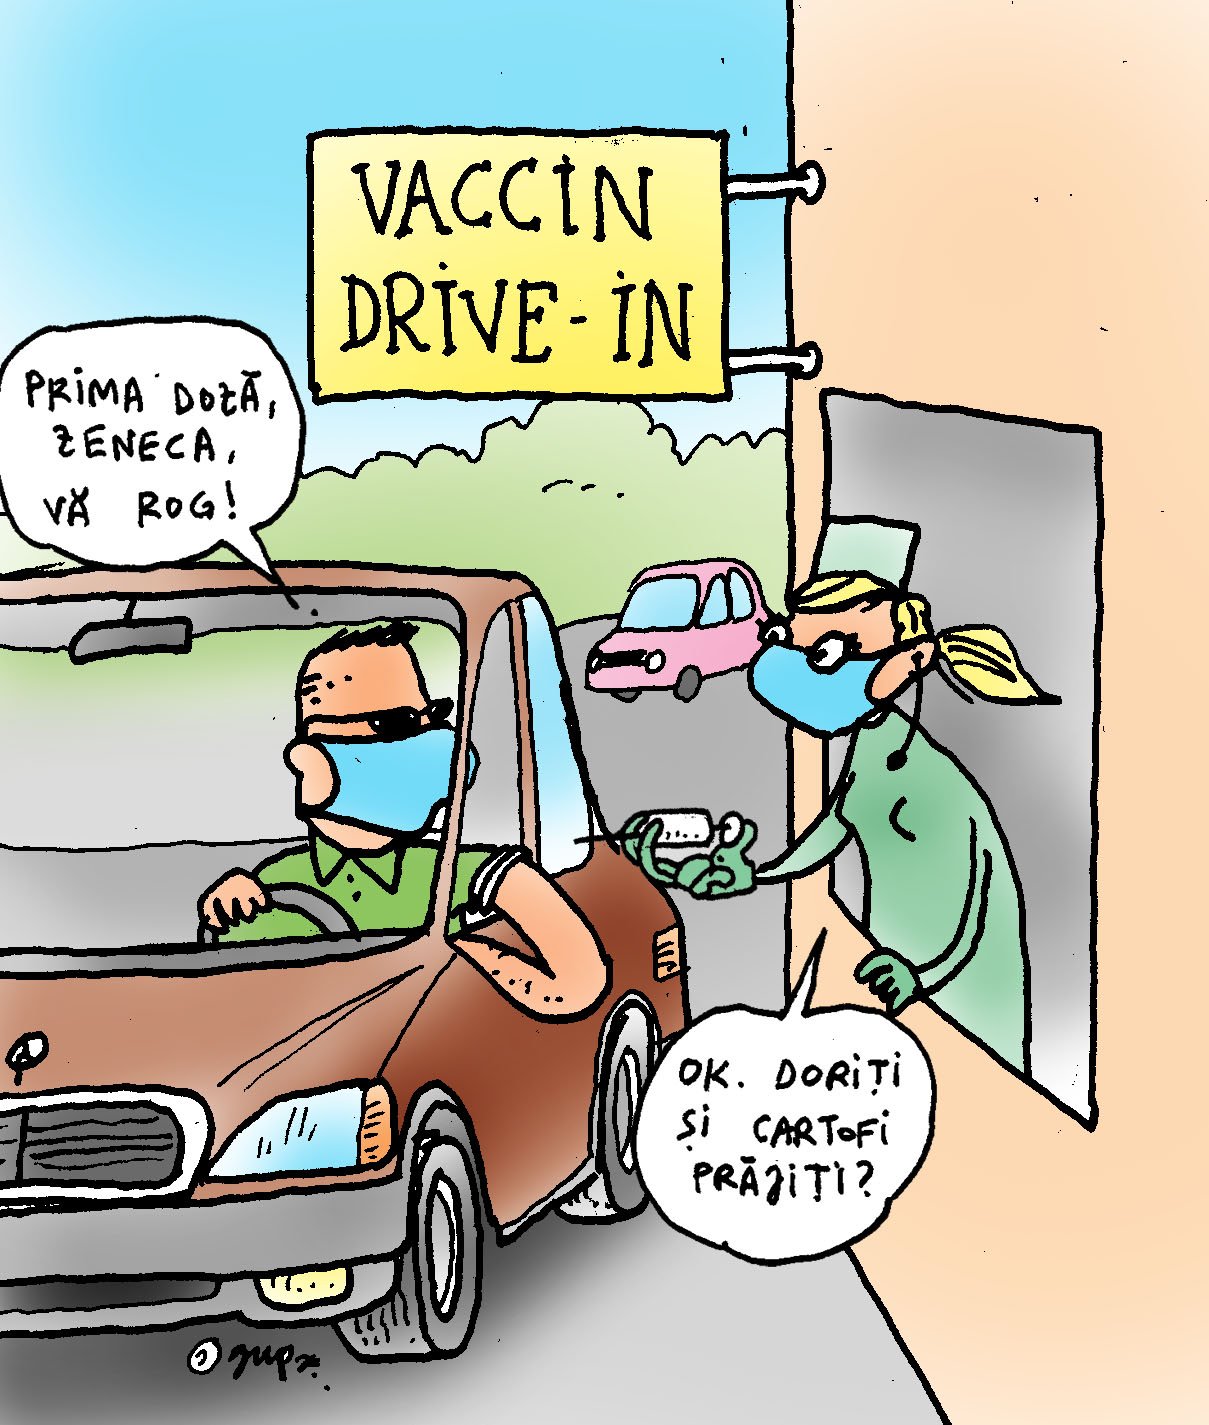  Vaccin Drive In